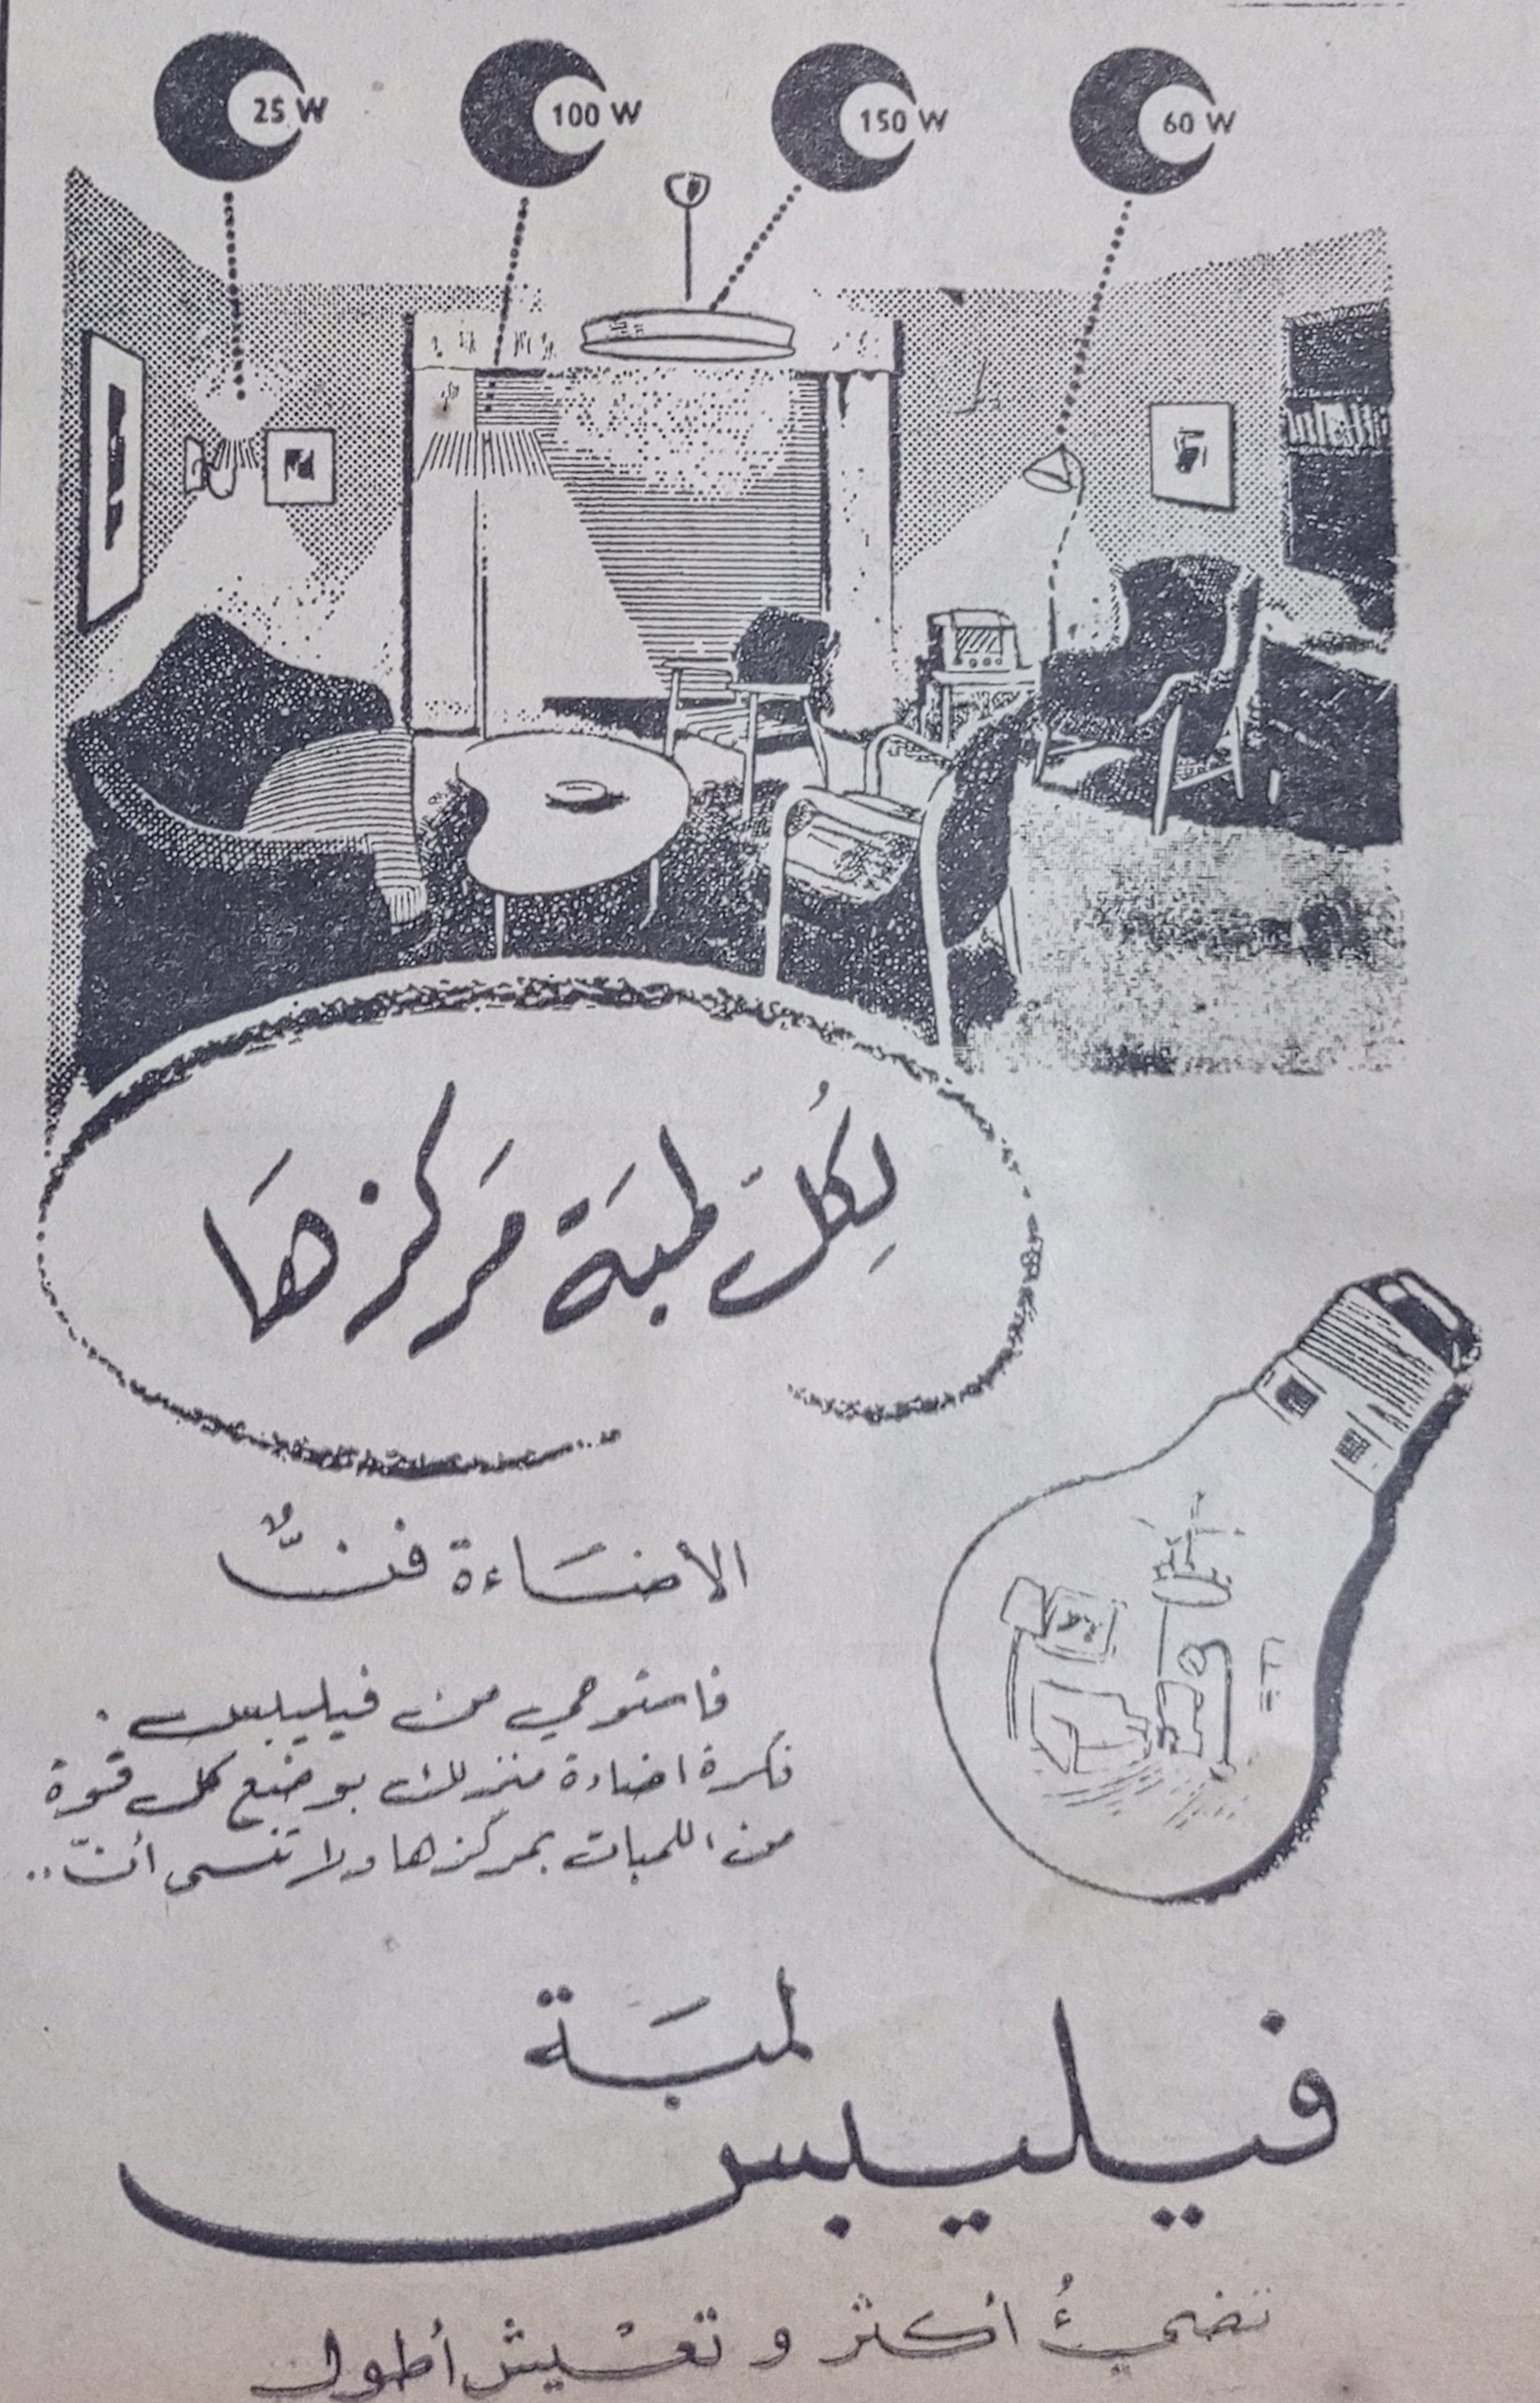 التاريخ السوري المعاصر - إعلان لمبات فيليبس في سورية 1956